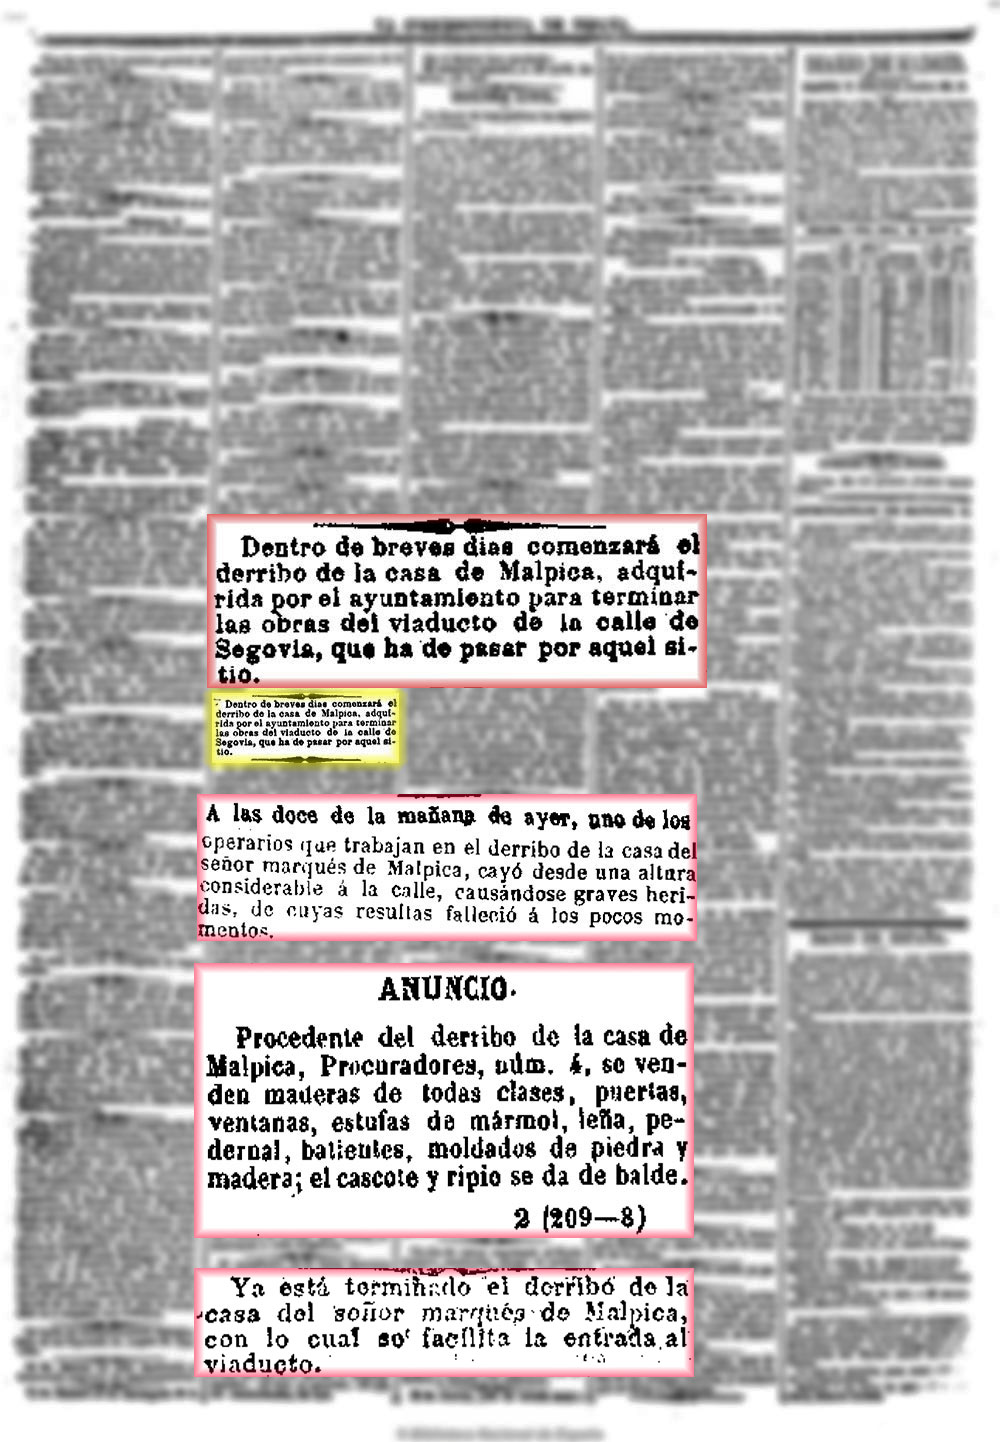 La Correspondencia de España, 4/7/1874, n.º 6.059, página 3, Anuncio de derribo del palacio del marqués de Malpica en Madrid.